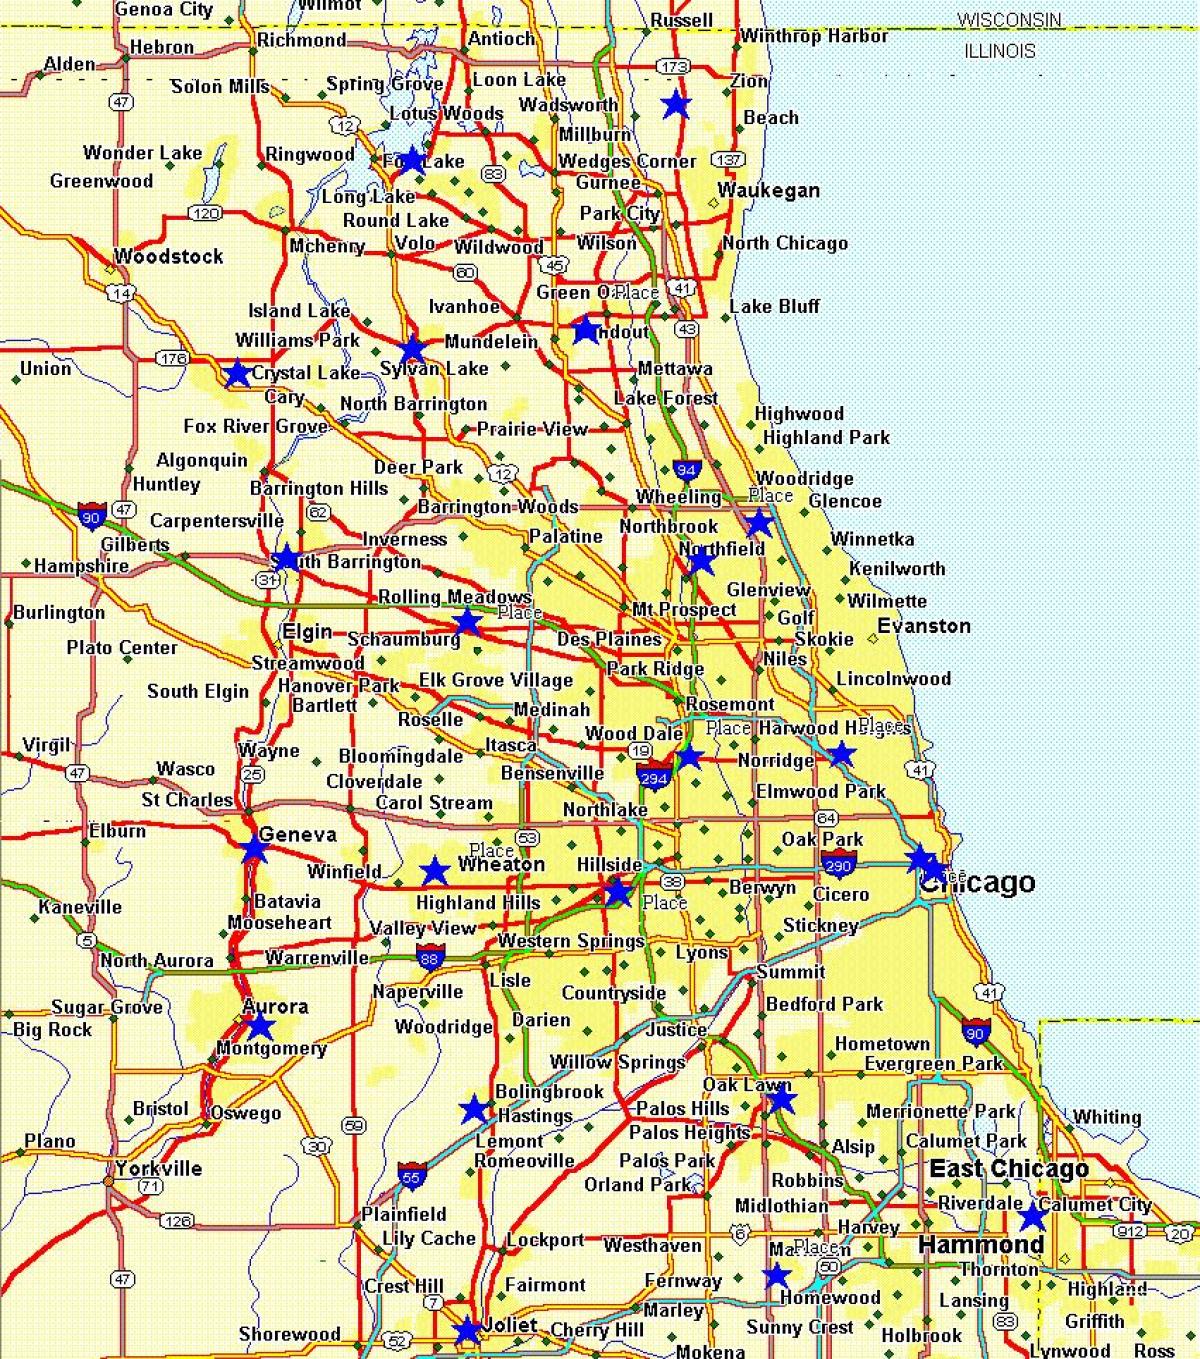 χάρτης της πόλης του Σικάγο